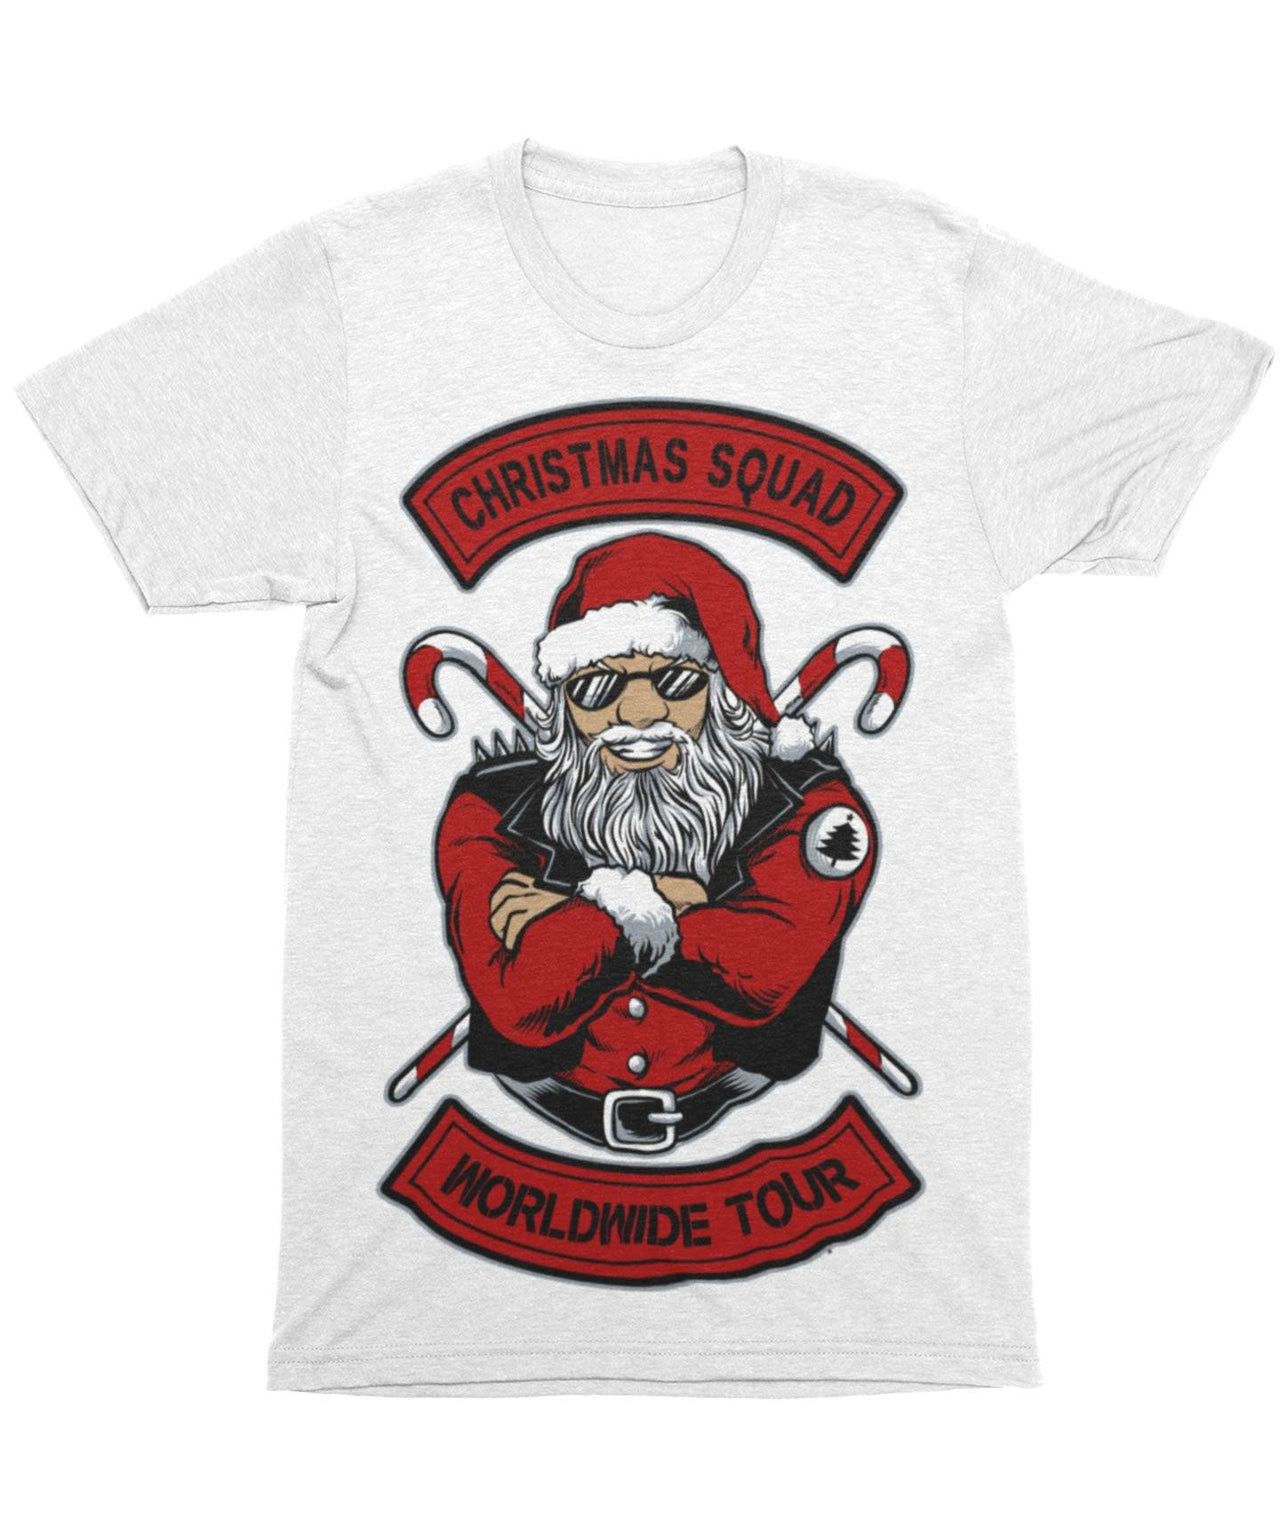 Christmas Squad Worldwide Tour Unisex Christmas Unisex T-Shirt 8Ball